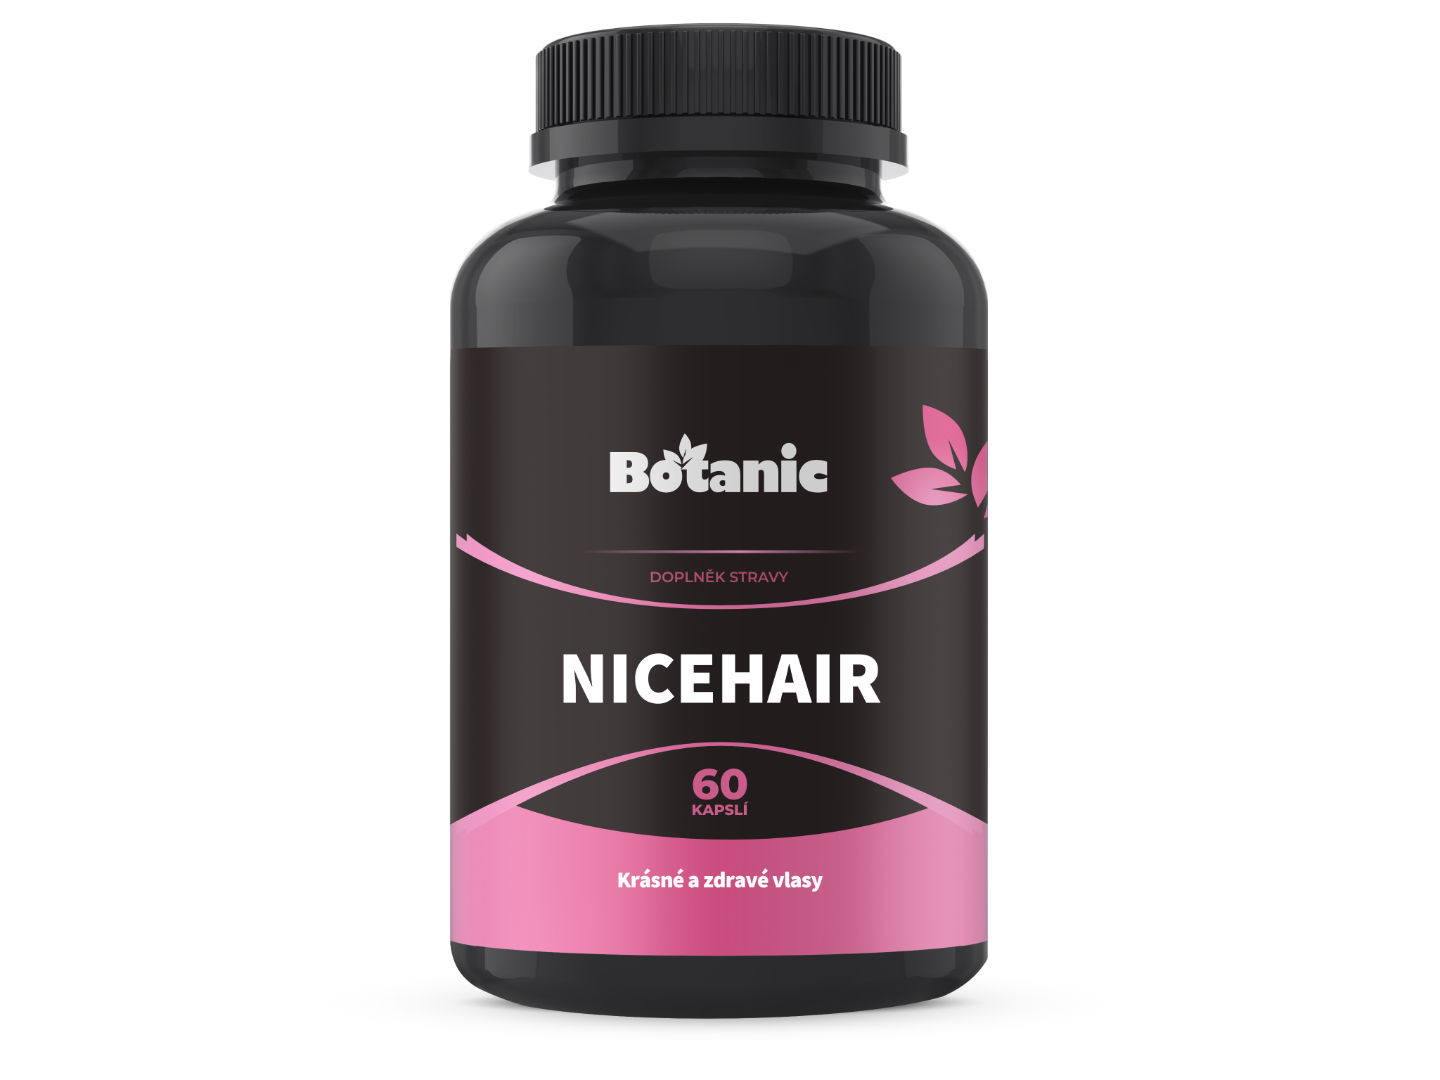 Botanic NiceHair - Krásné a zdravé vlasy 60kap.